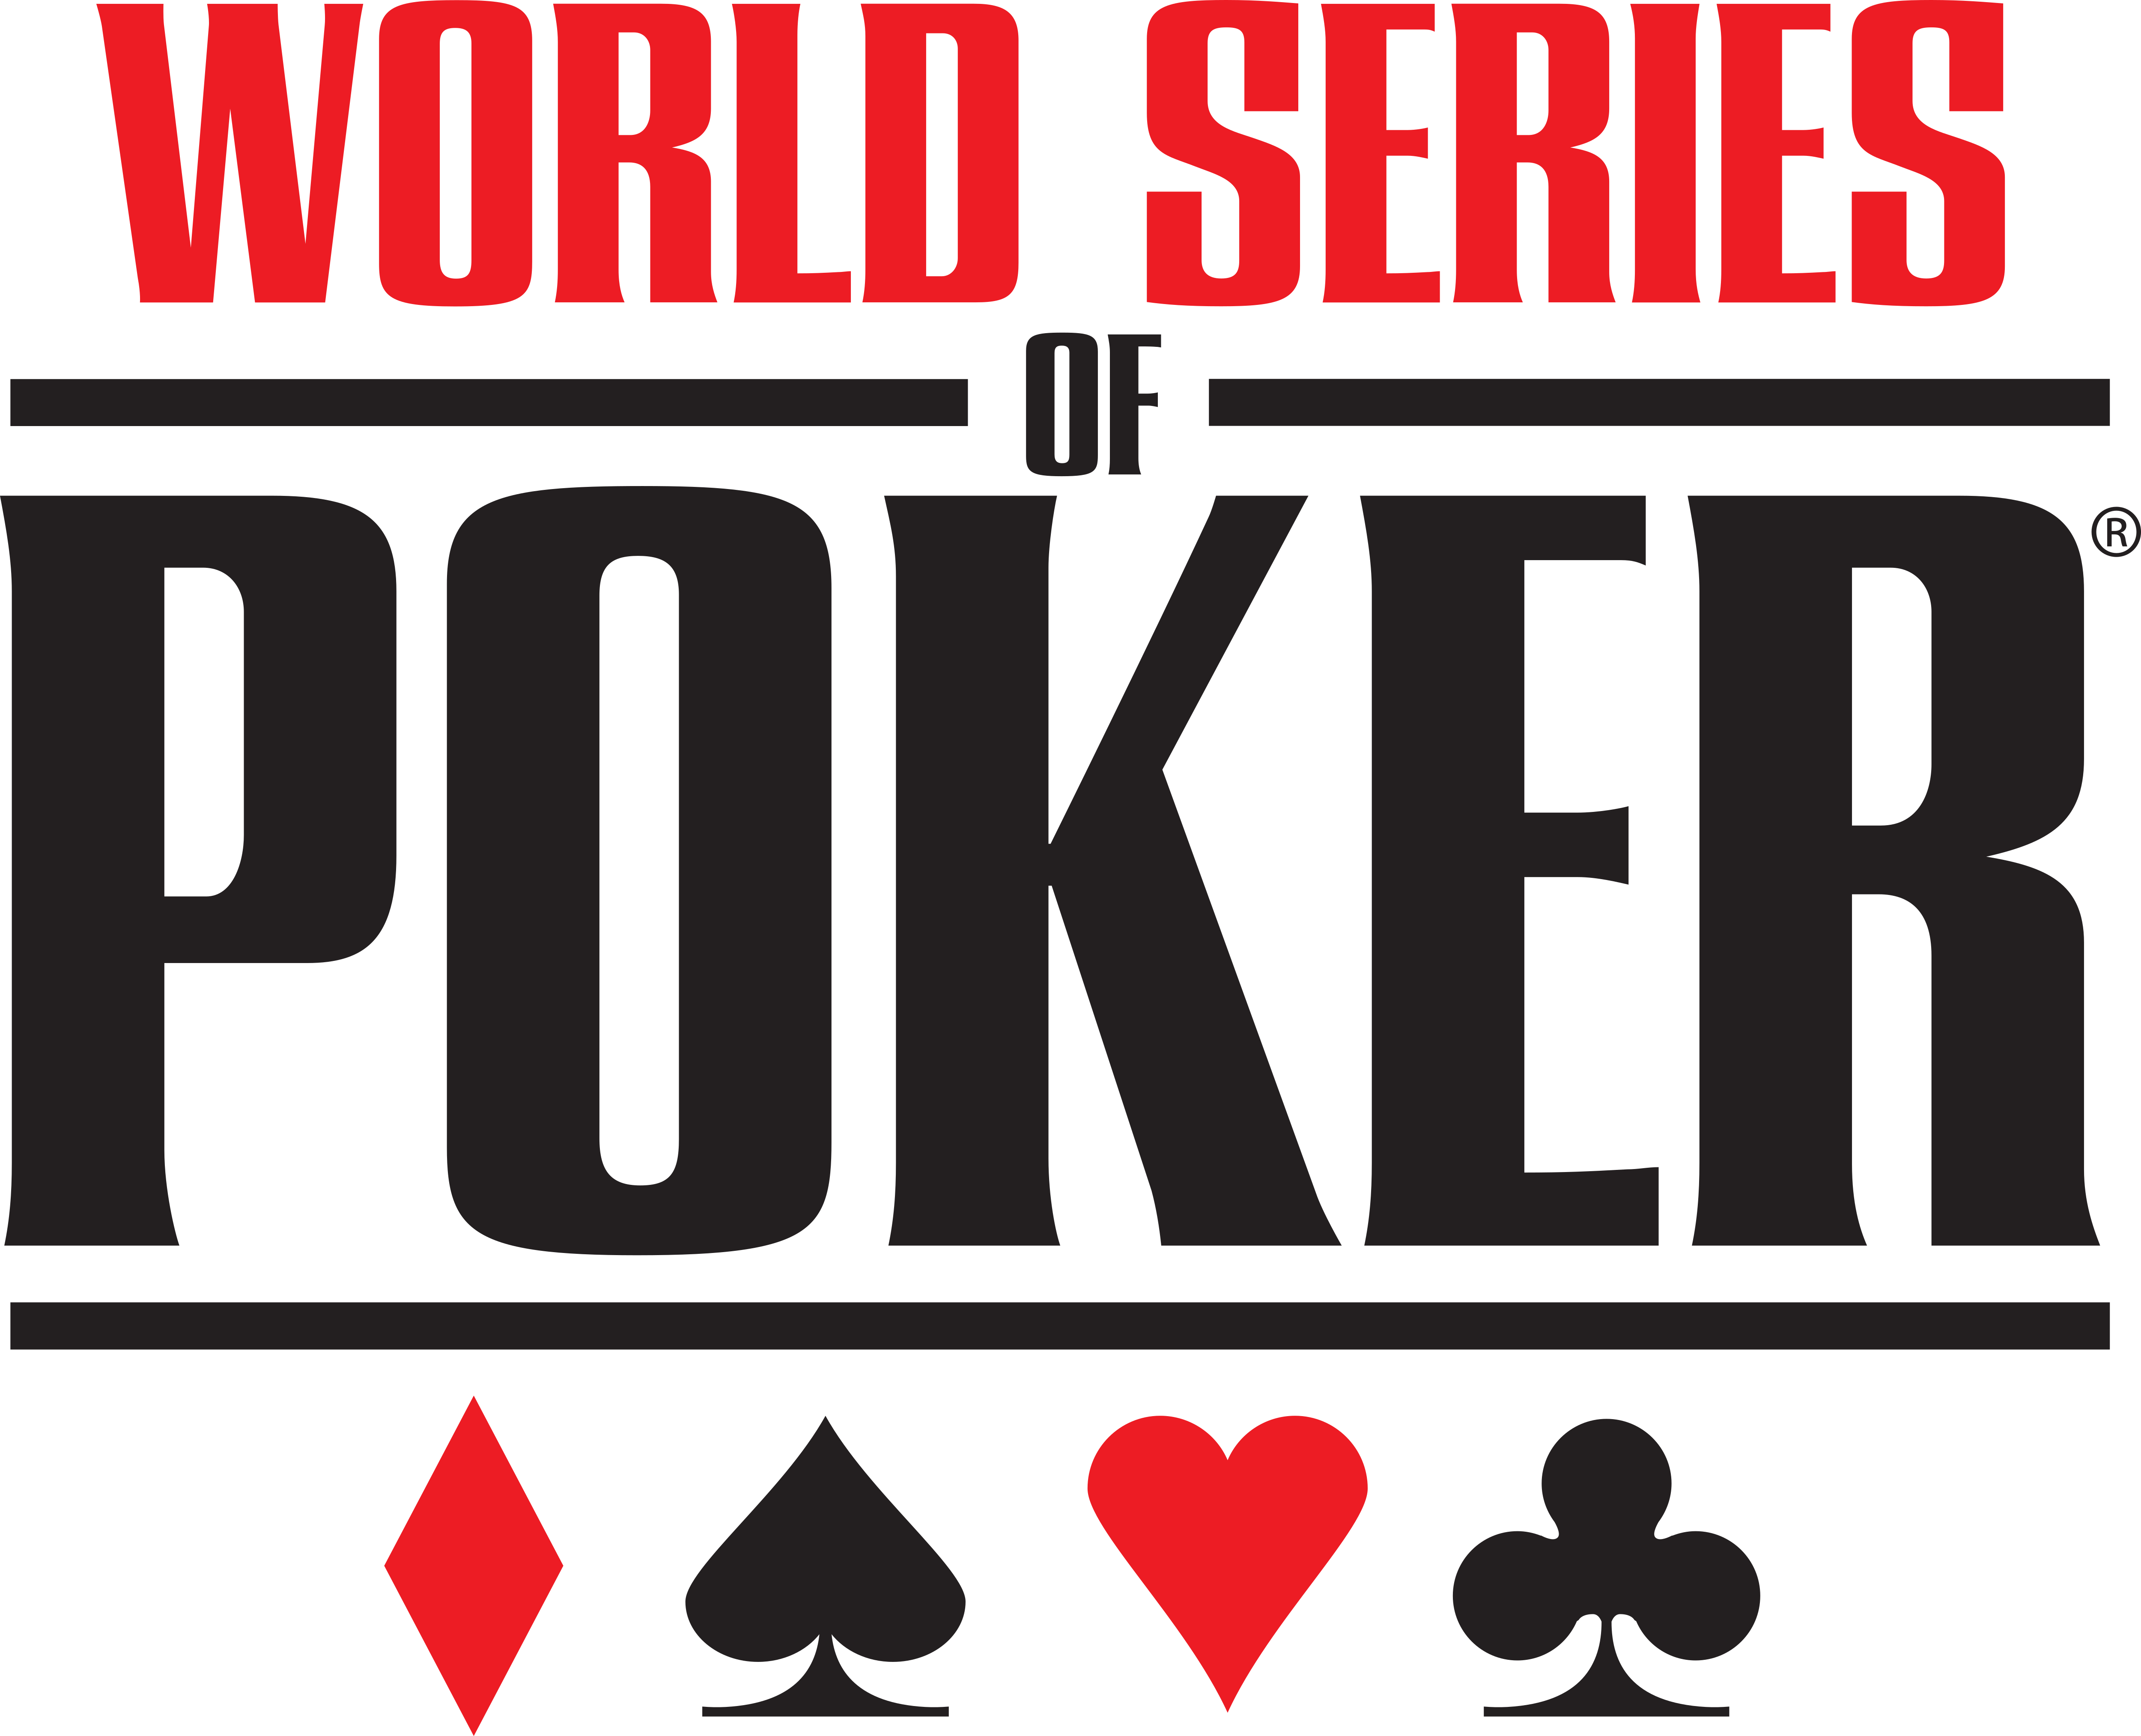 World Series of Poker Logos Download